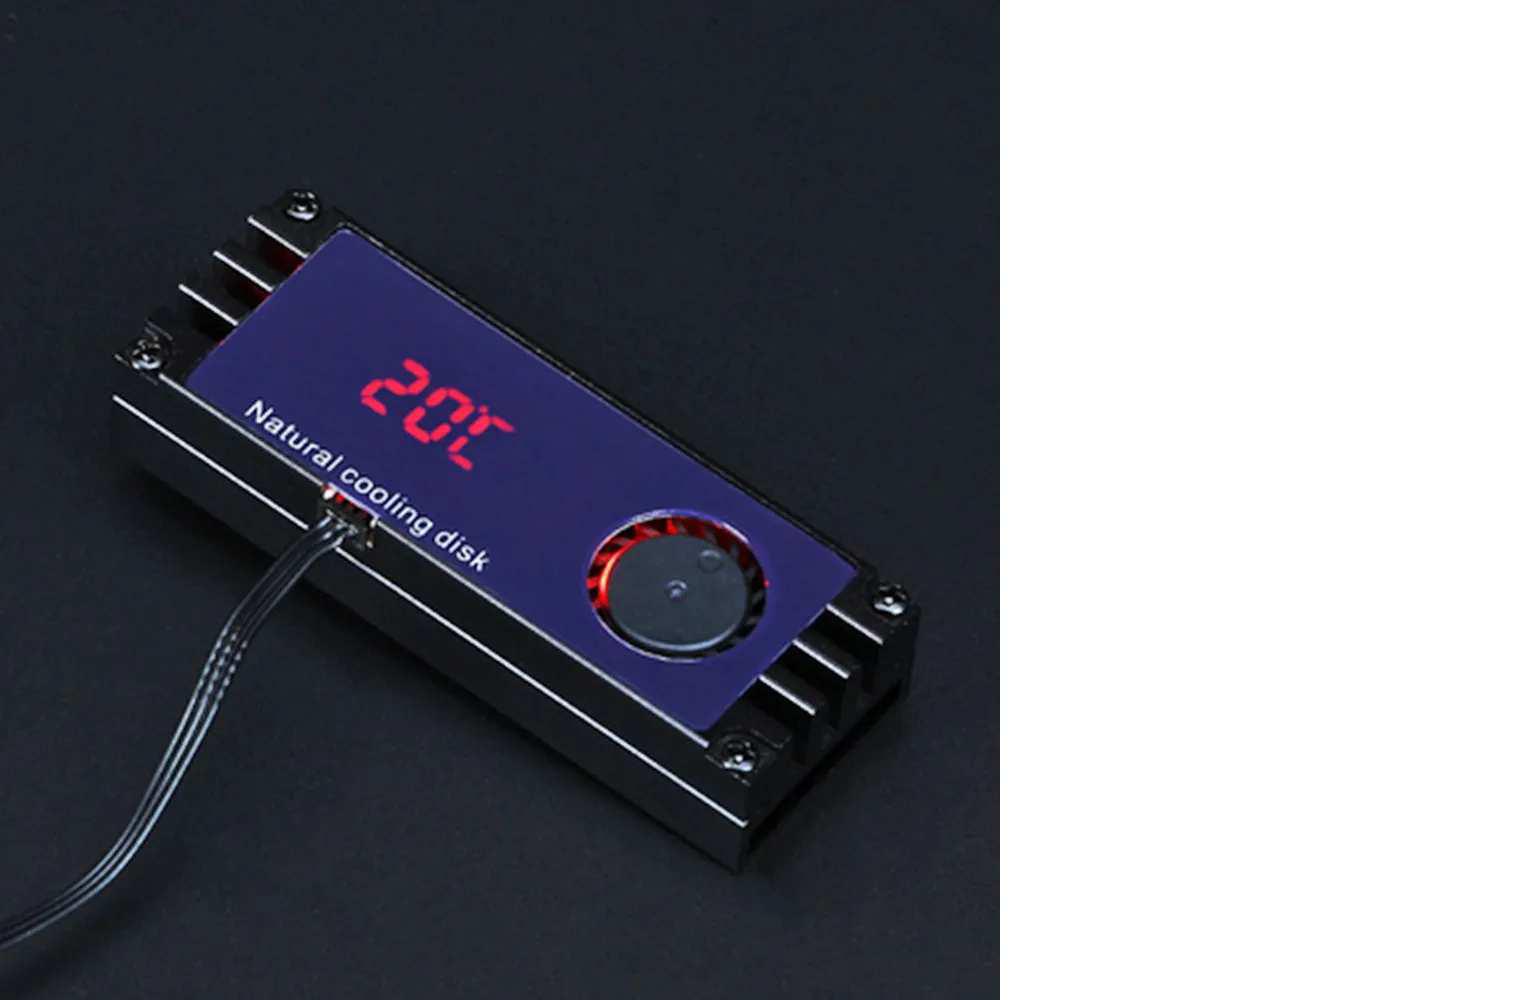 Цифровой дисплей температуры M.2 SSD радиаторный кулер с турбовентилятором